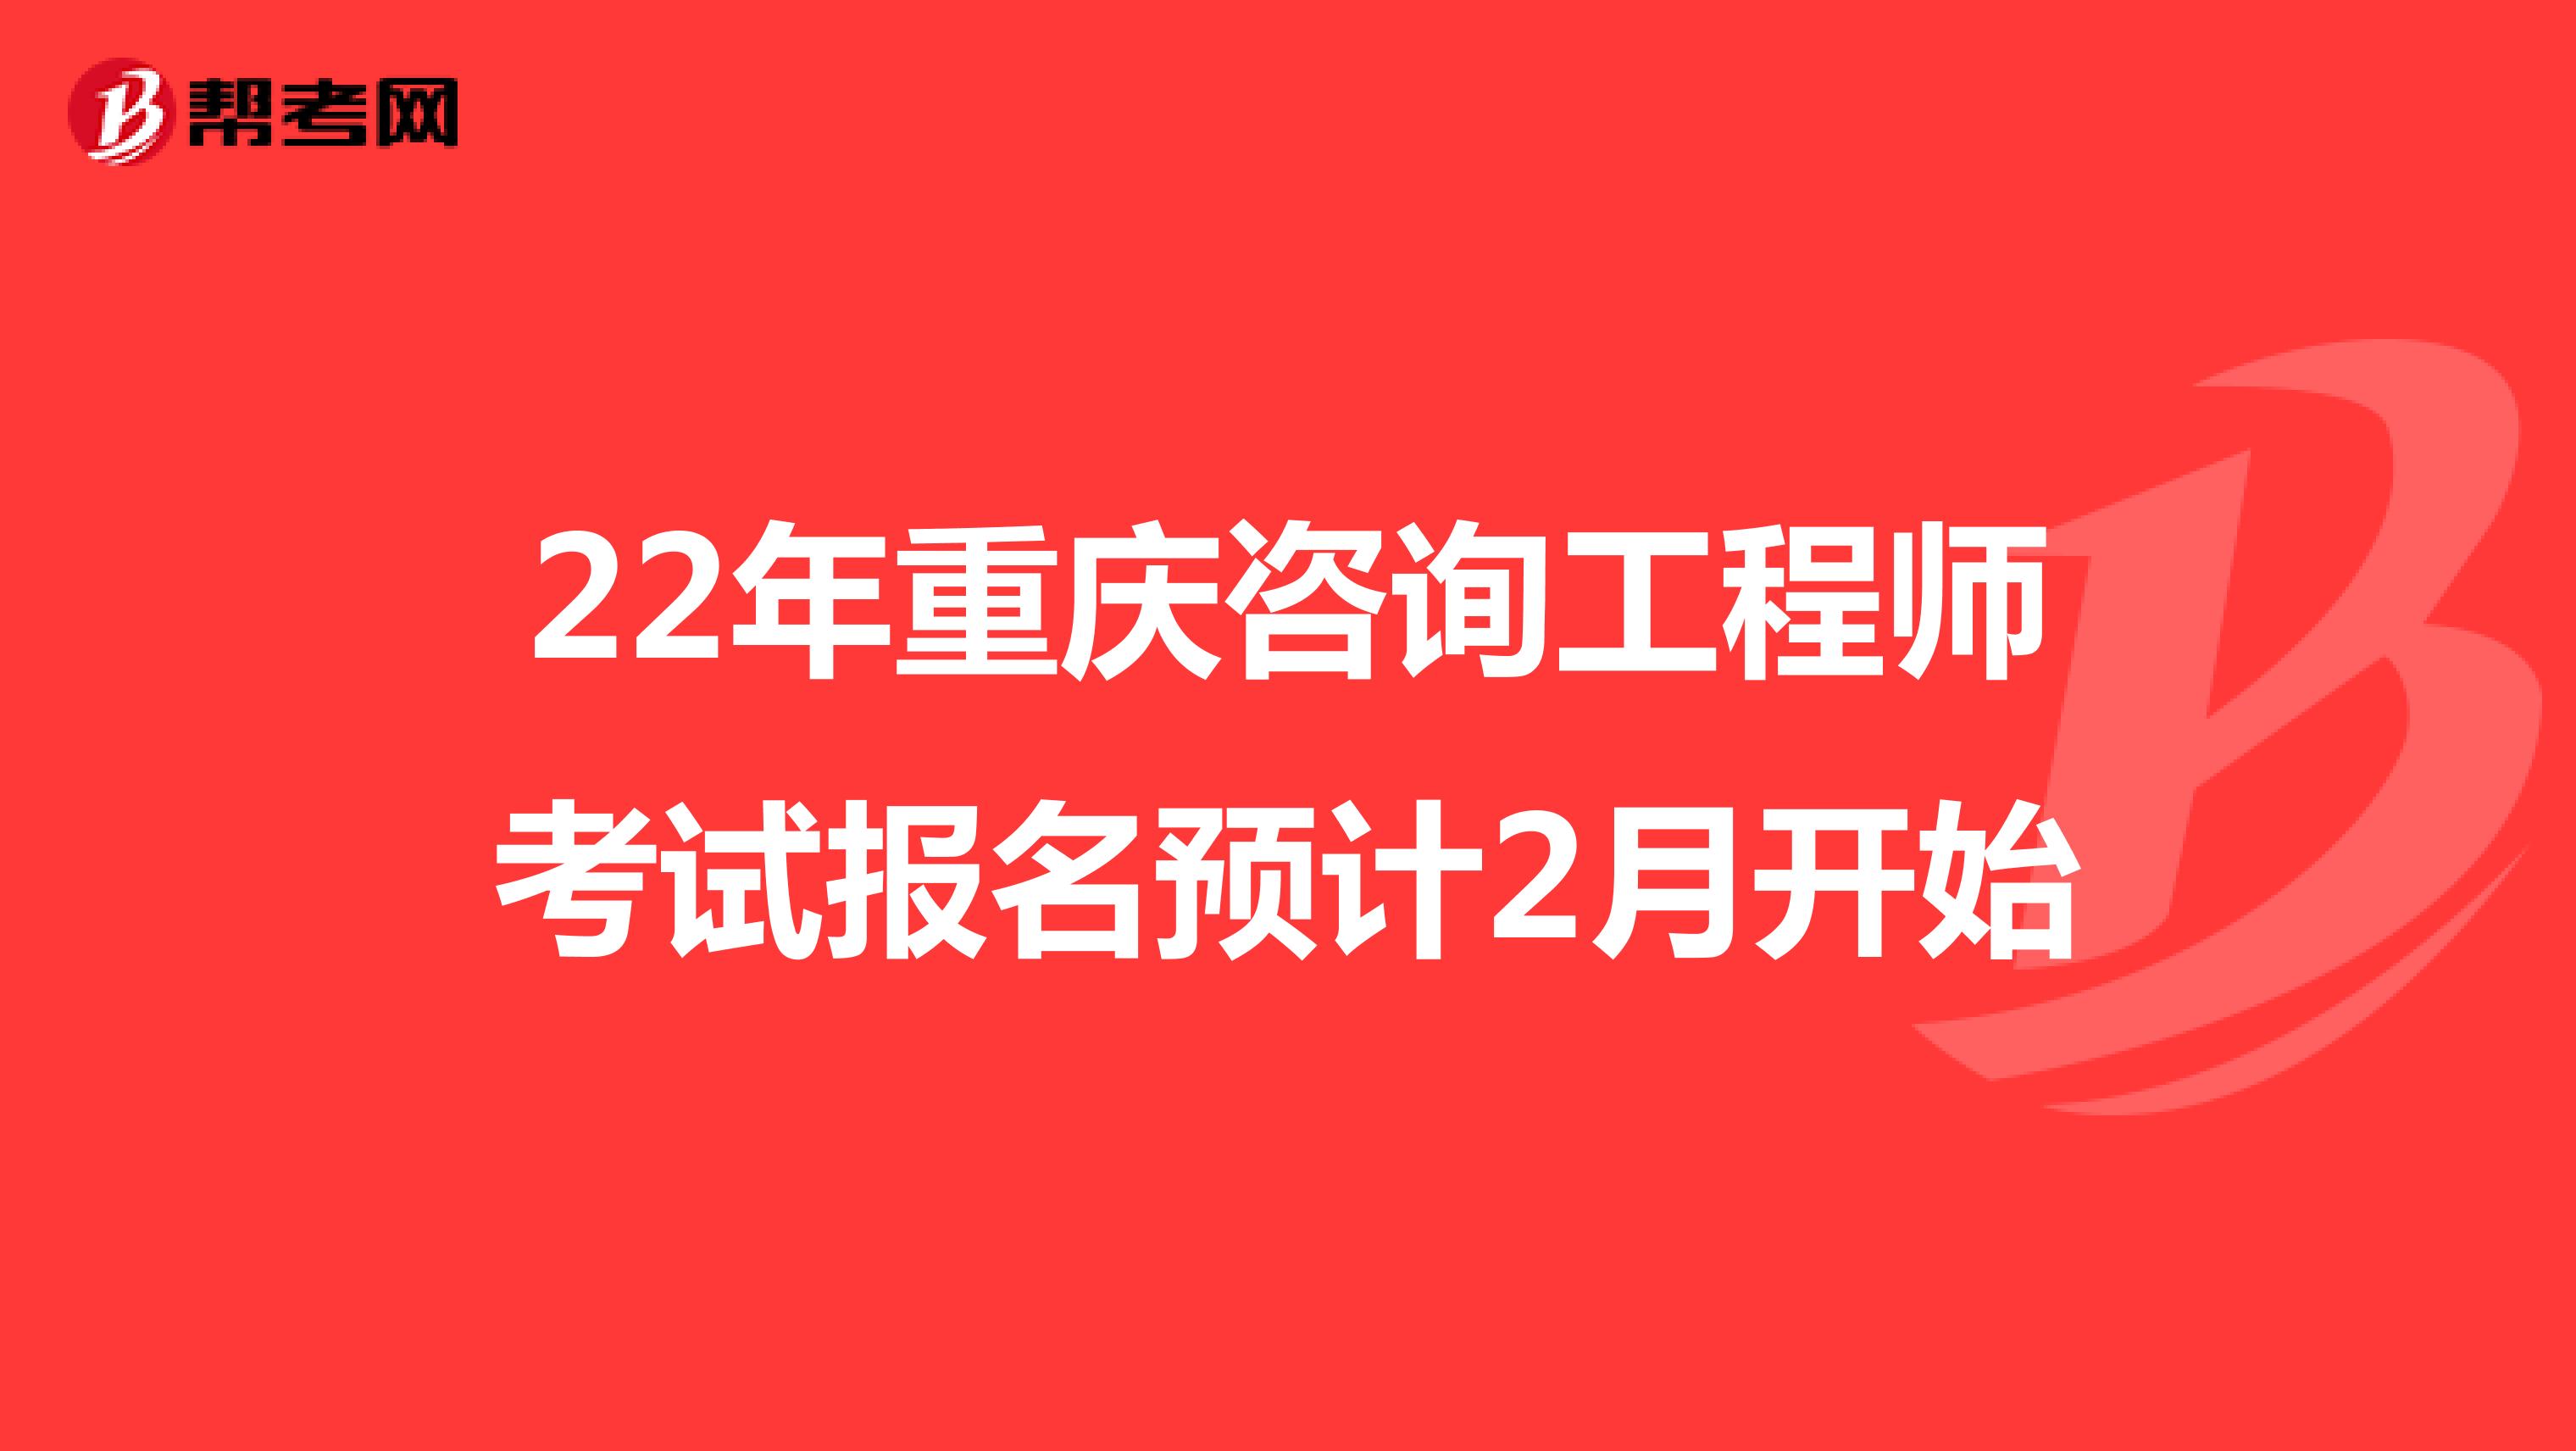 22年重庆咨询工程师考试报名预计2月开始